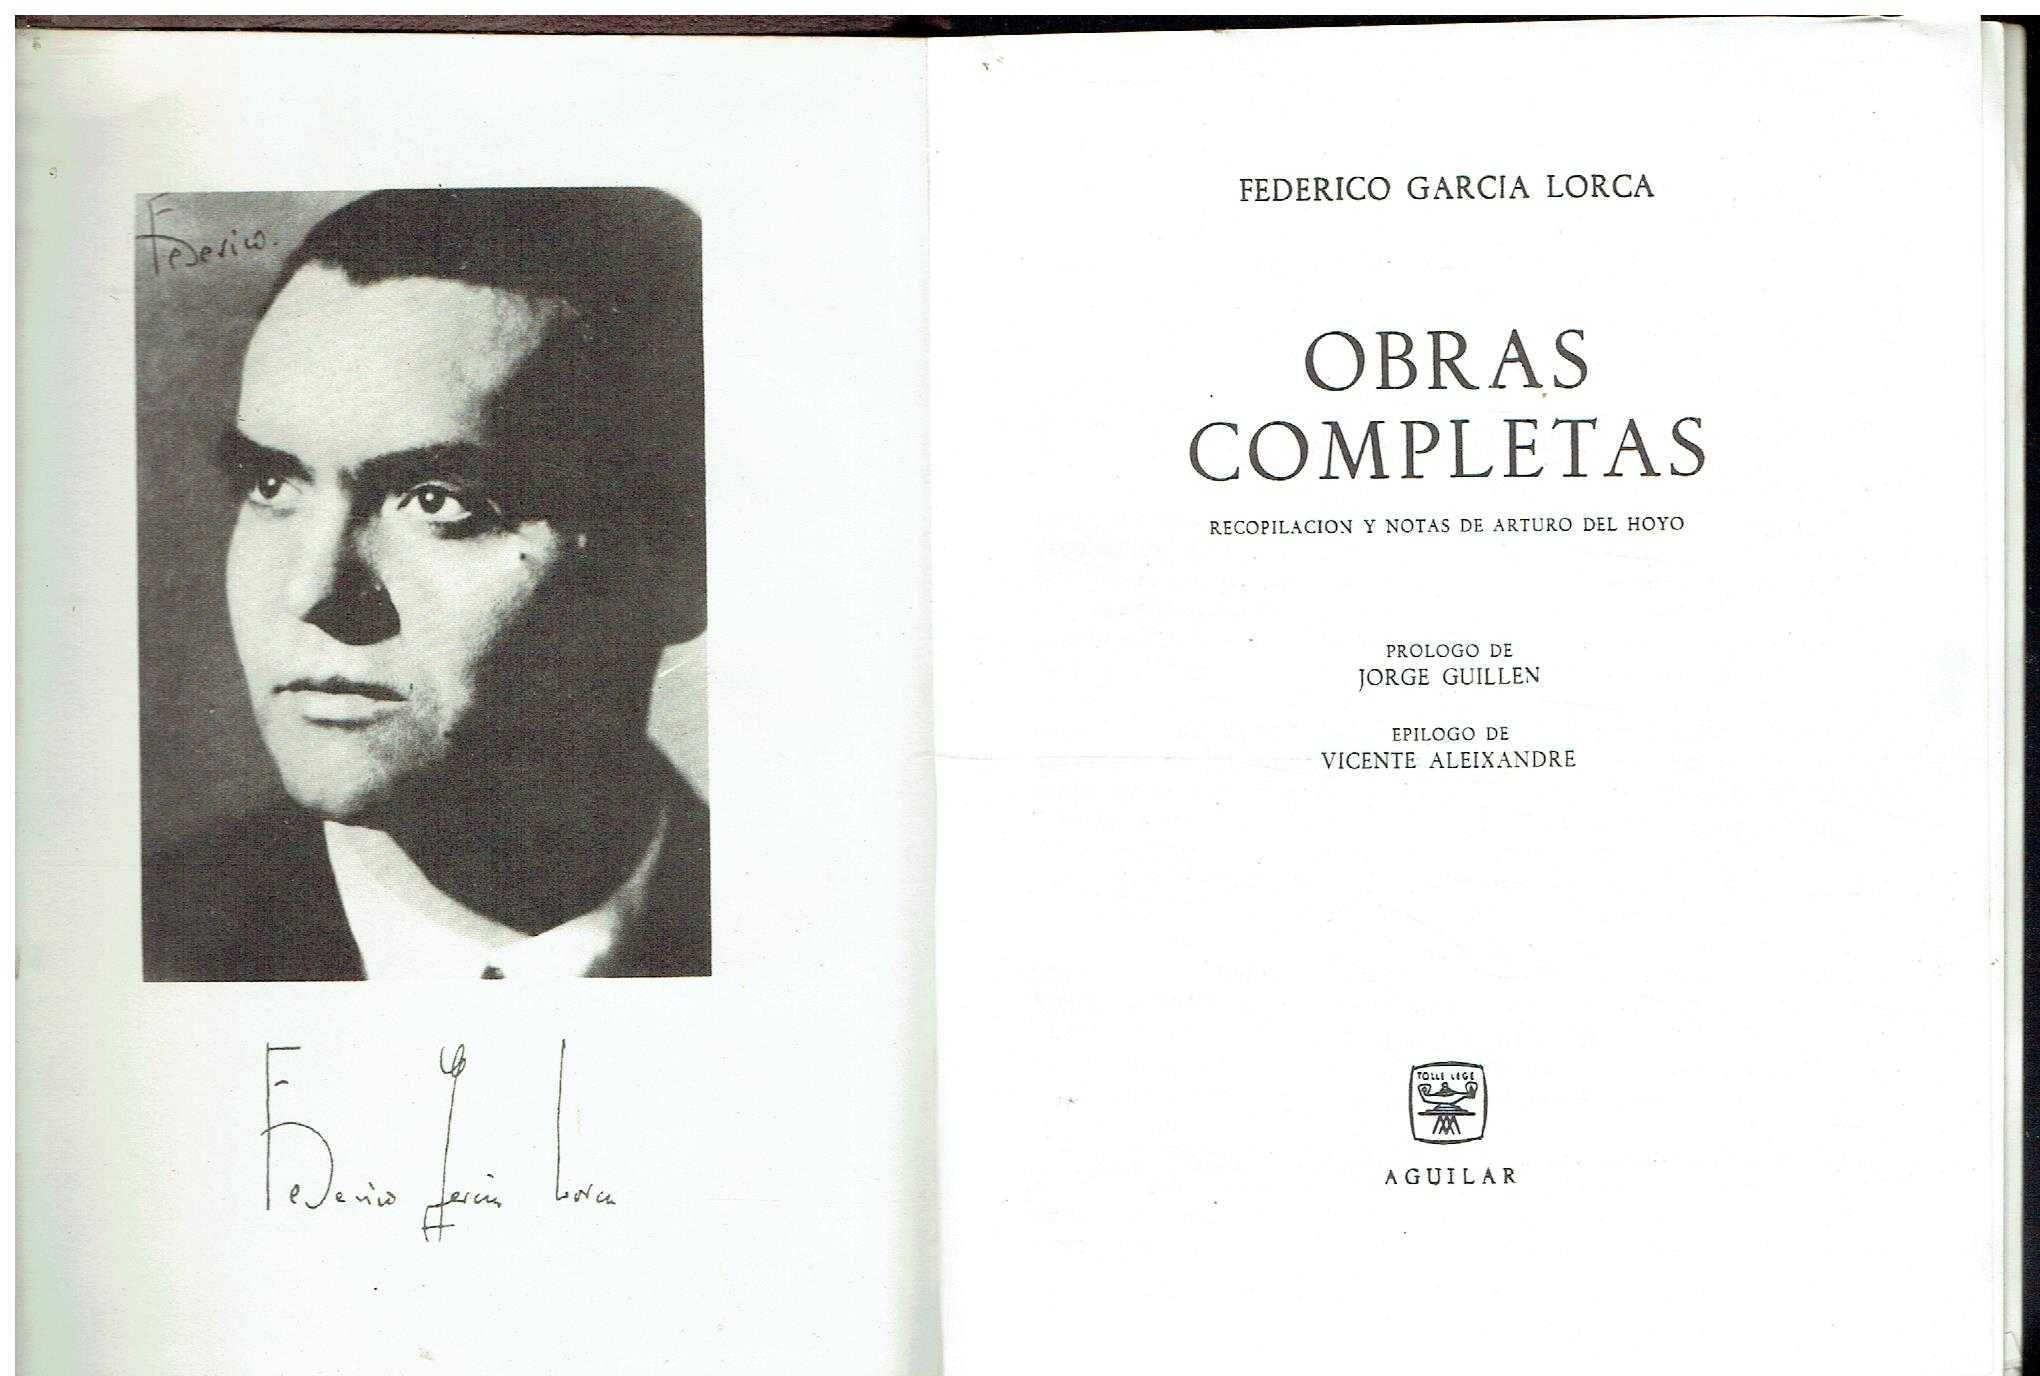 11398

Obras Completas 
de Frederico Garcia Lorca